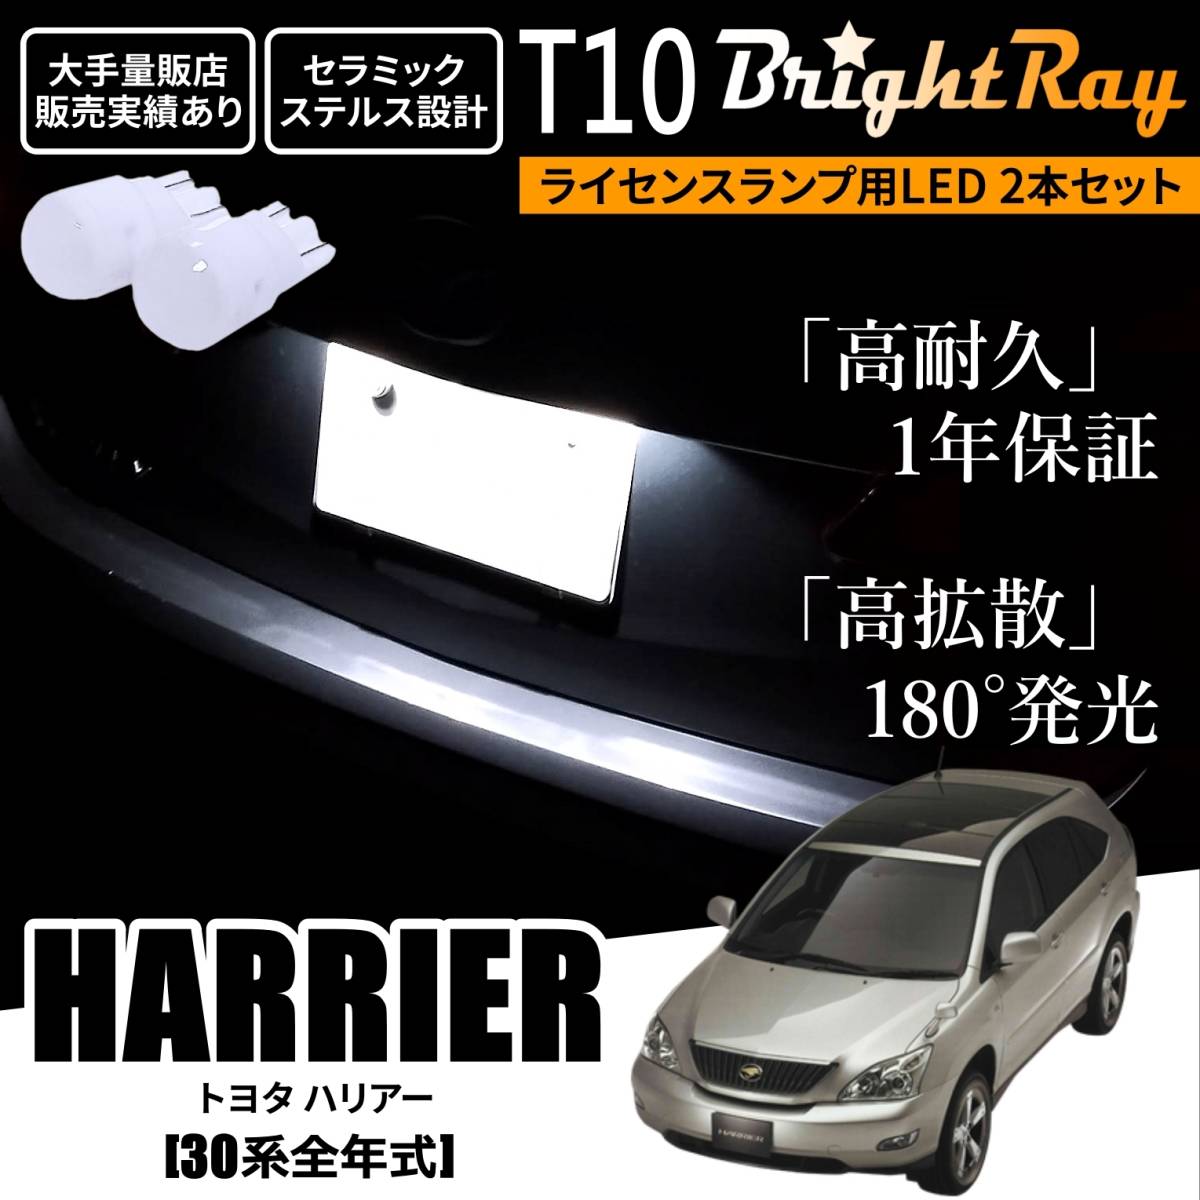 送料無料 トヨタ ハリアー 30系 全年式 BrightRay T10 LED バルブ 1年保証 ナンバー灯 ライセンスランプ ホワイト ポジションランプにも_画像1